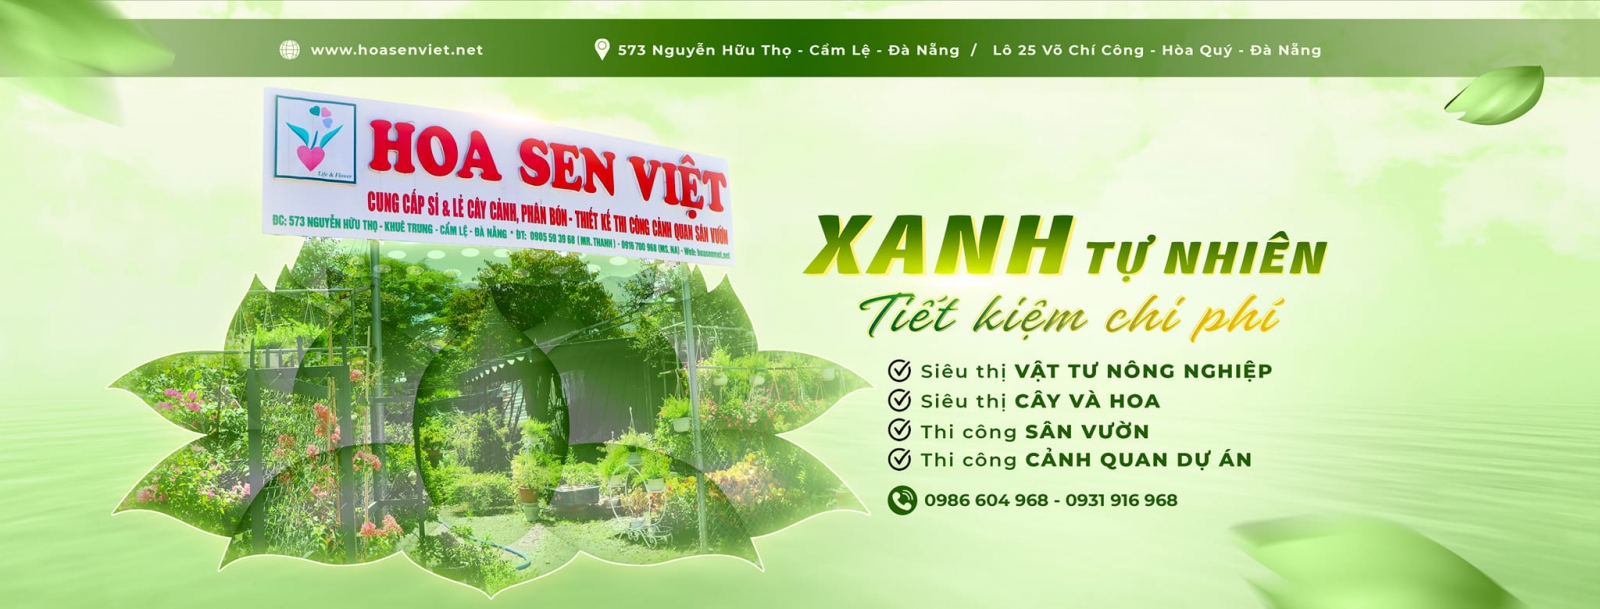 Vườn cây cảnh Hoa Sen Việt - Cây cảnh Hà Huy Tập Đà Nẵng